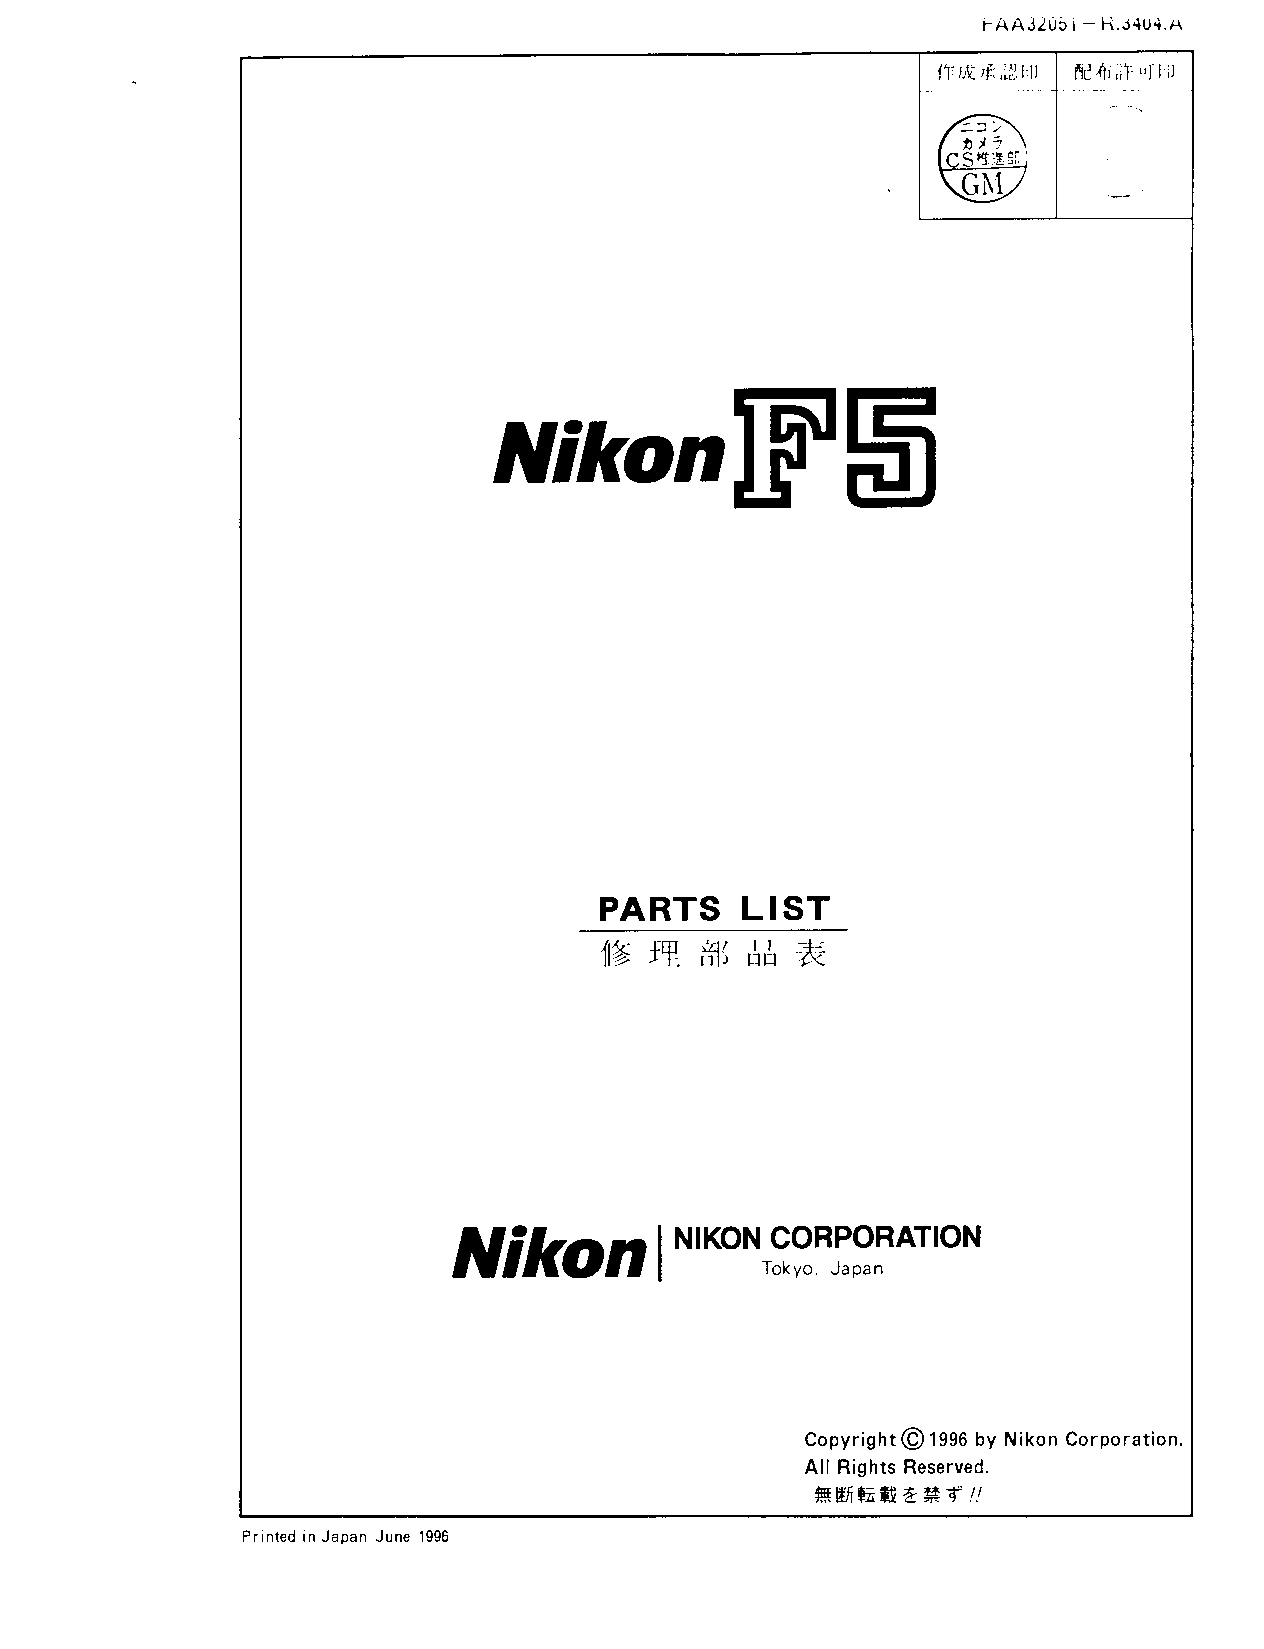 Nikon F5 parts list